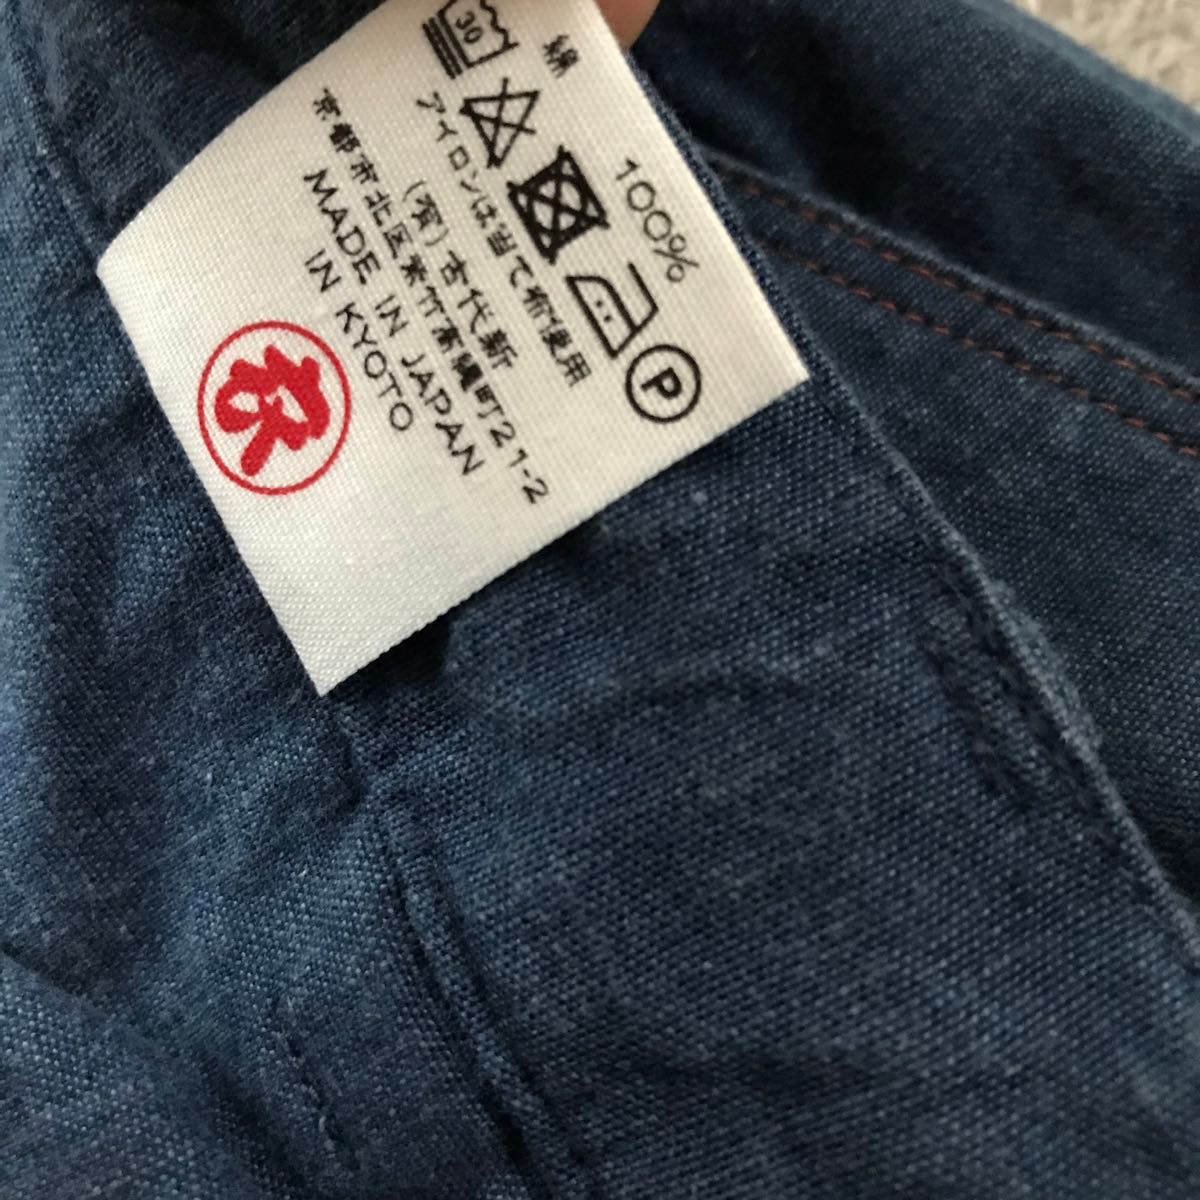 【日本製】古代新 衣 コットンパンツ L 和柄 鯉柄 夏パンツ